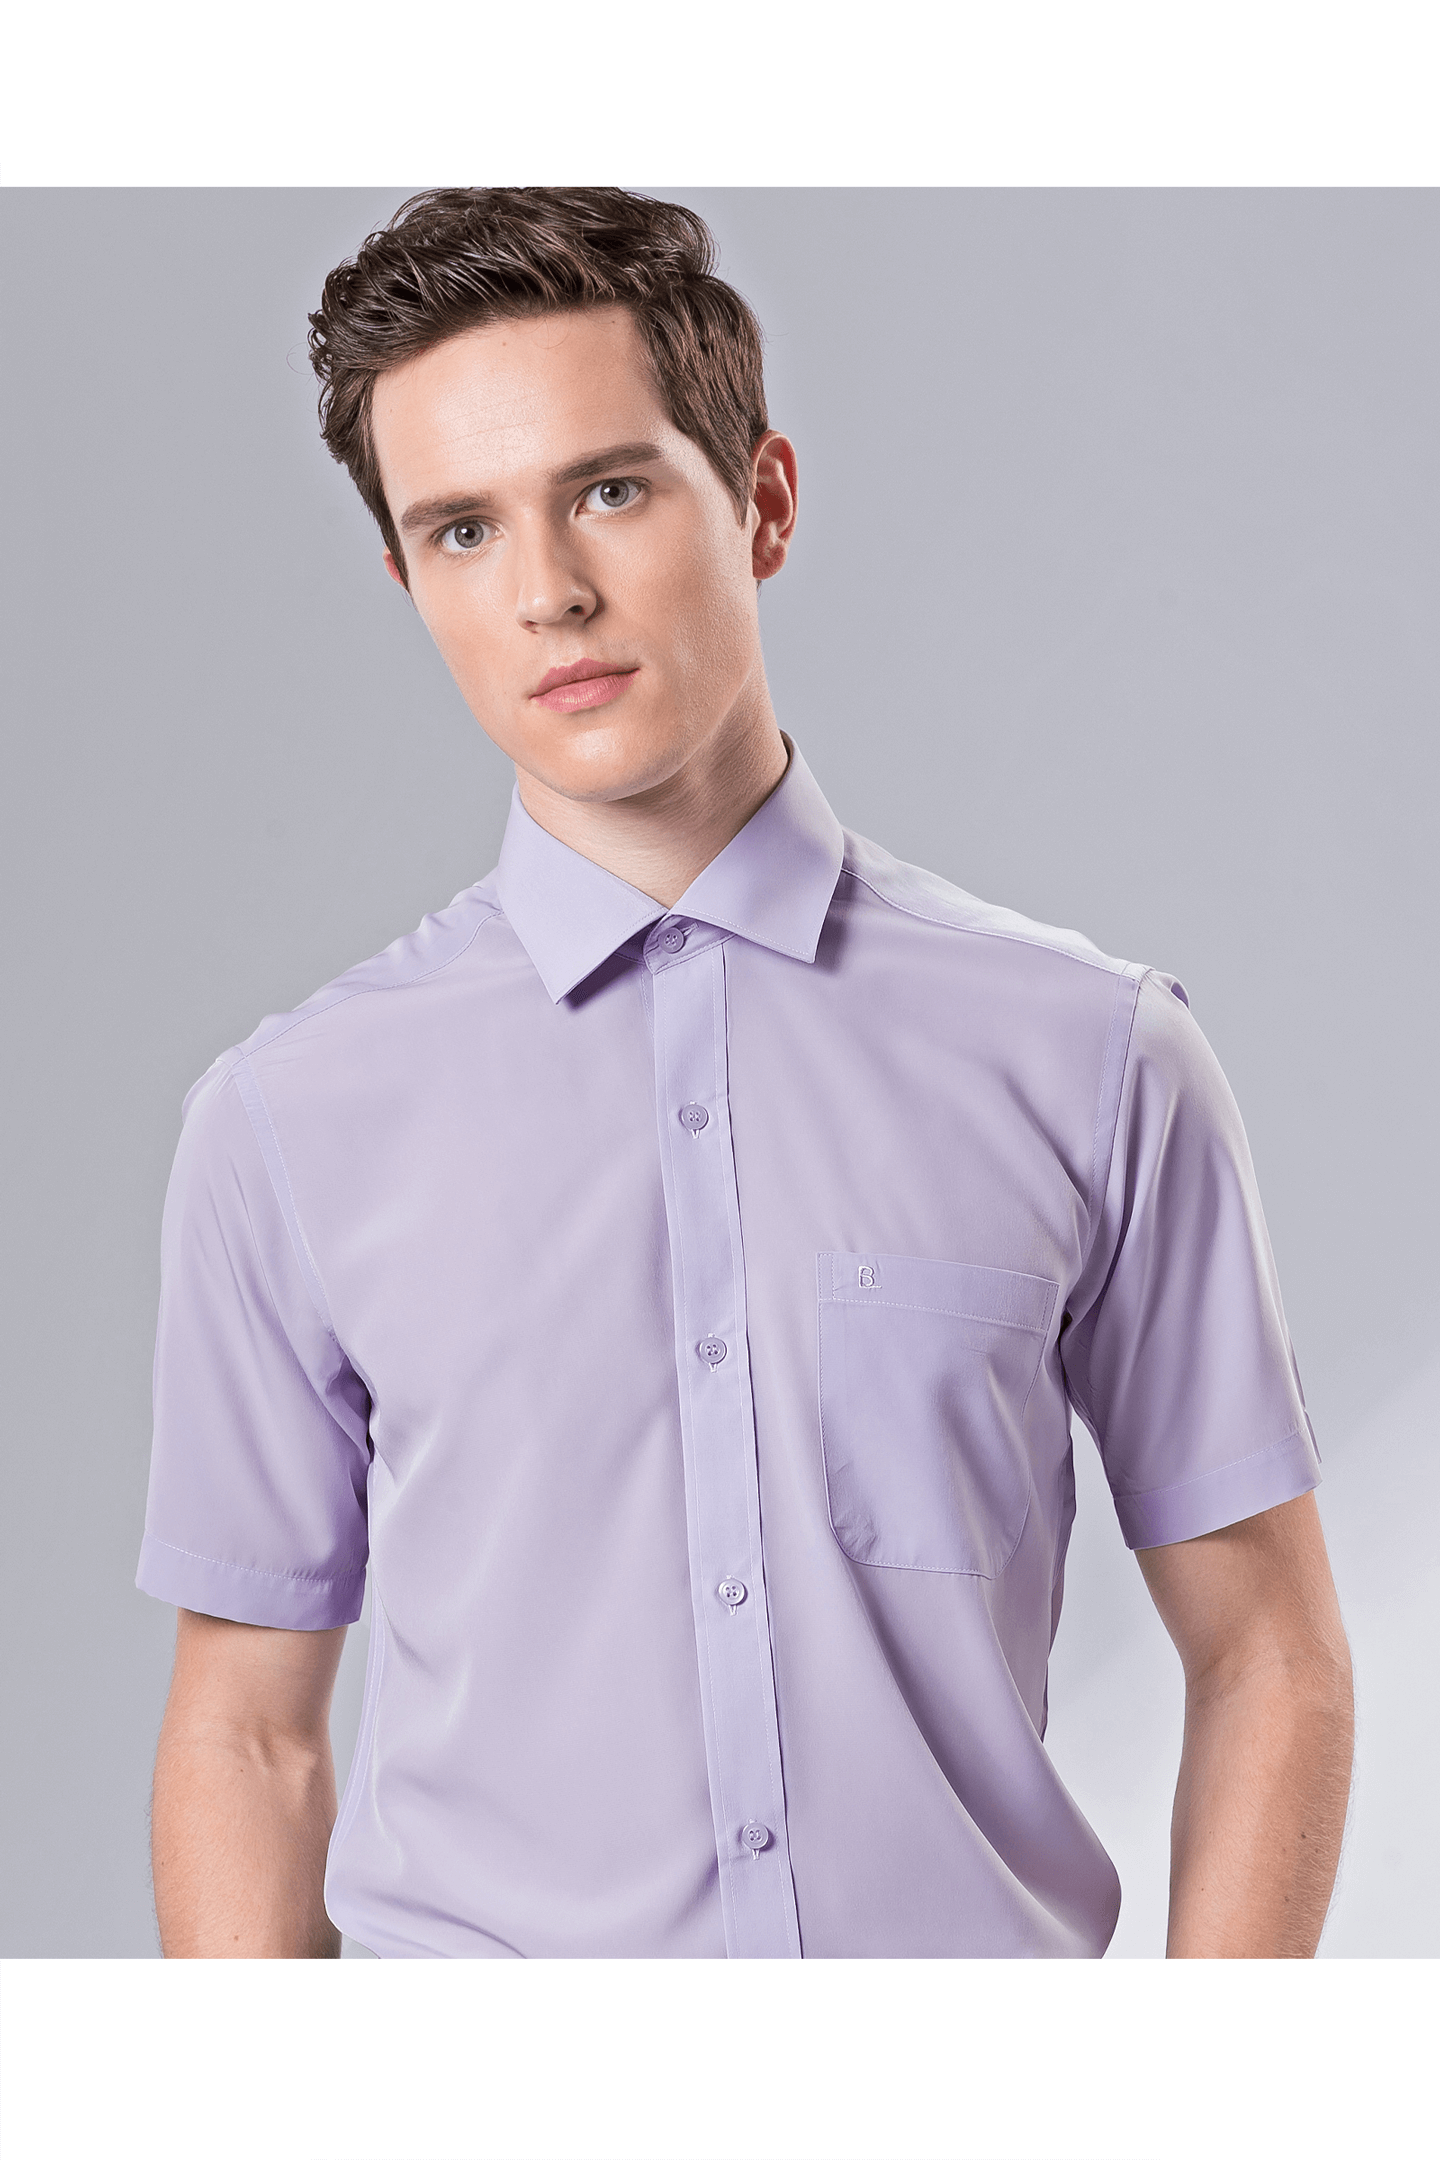 紫色素面短袖修身襯衫 / 抗皺 舒適透氣